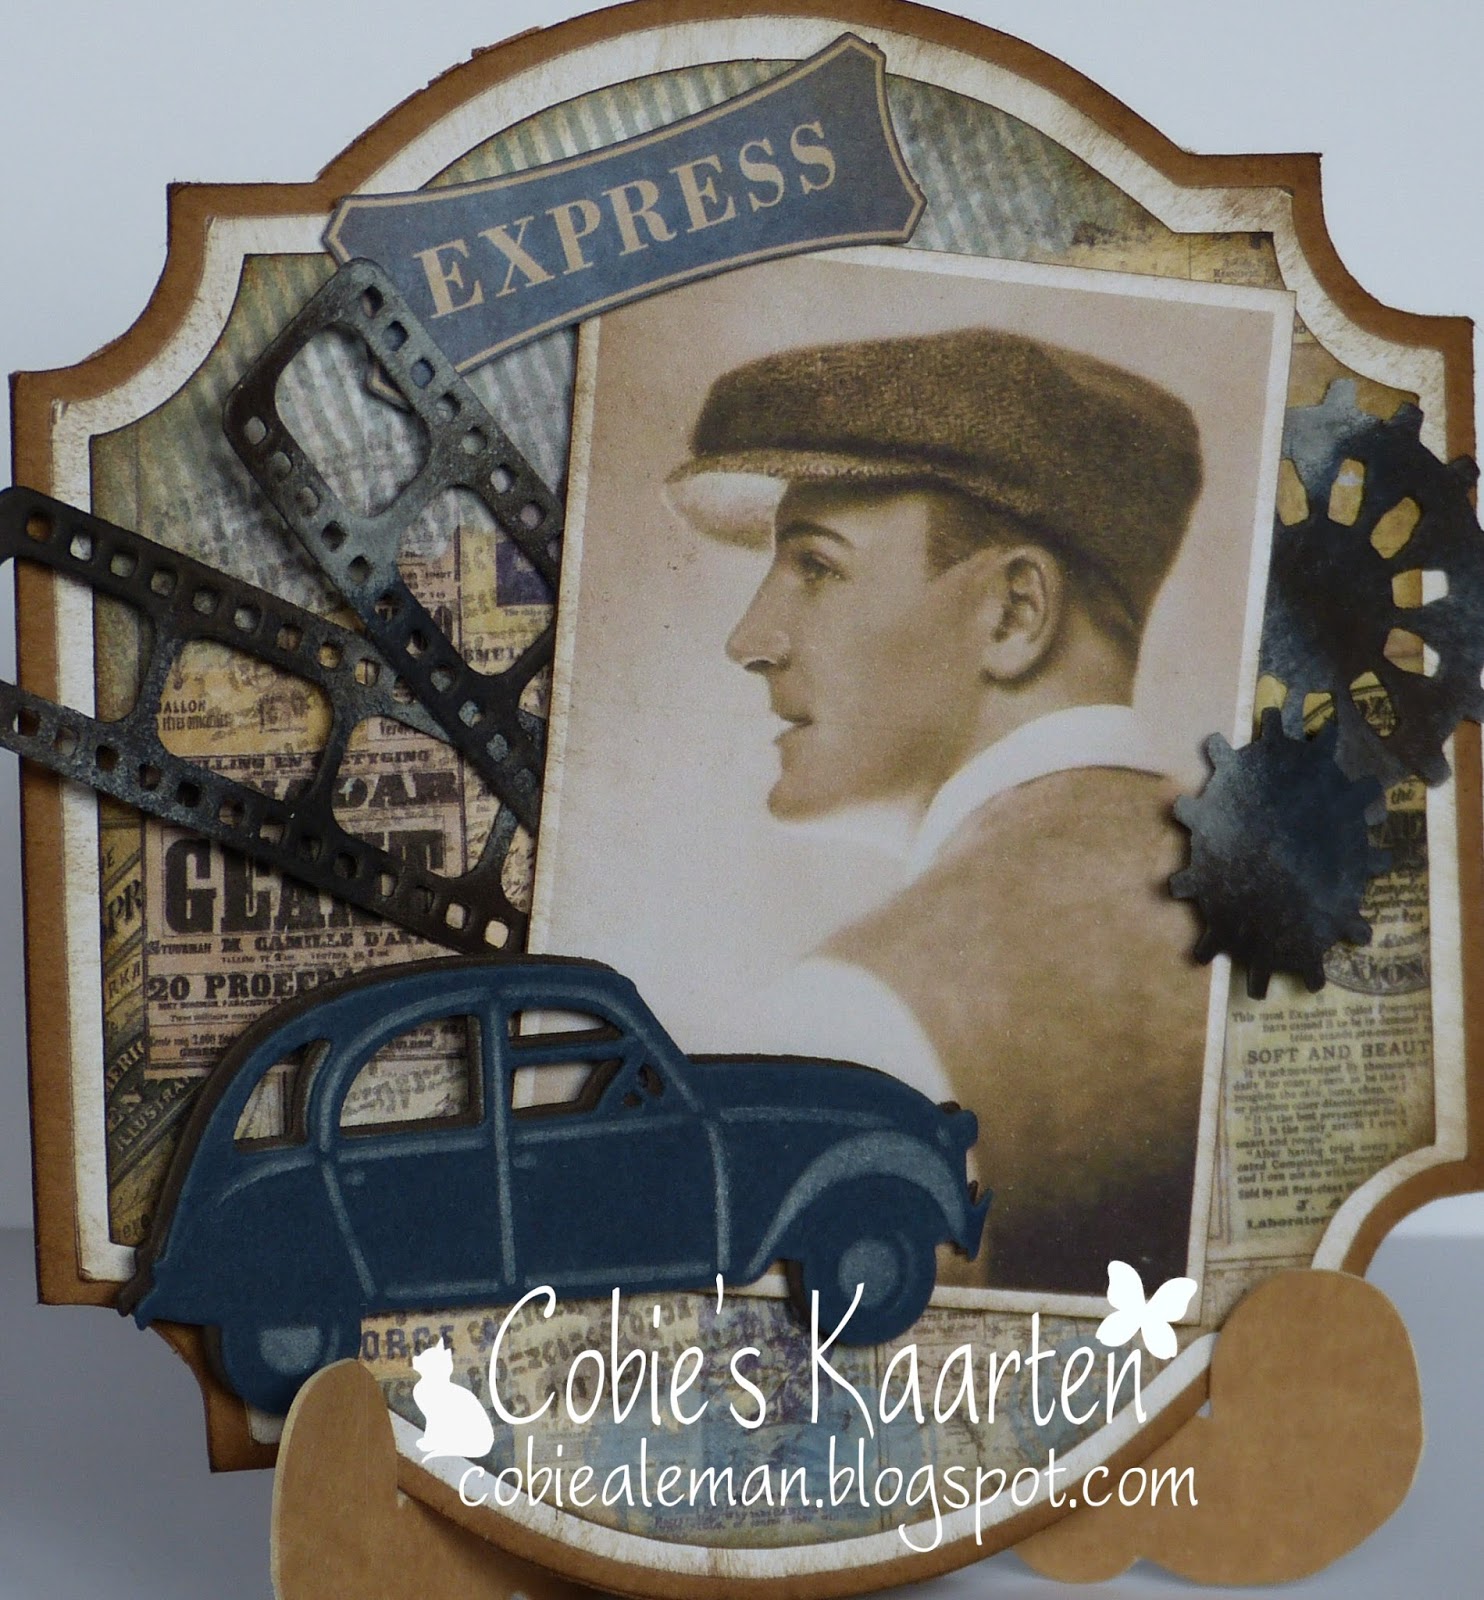 Ongekend Cobie's kaarten: Vintage mannen kaart MB-01